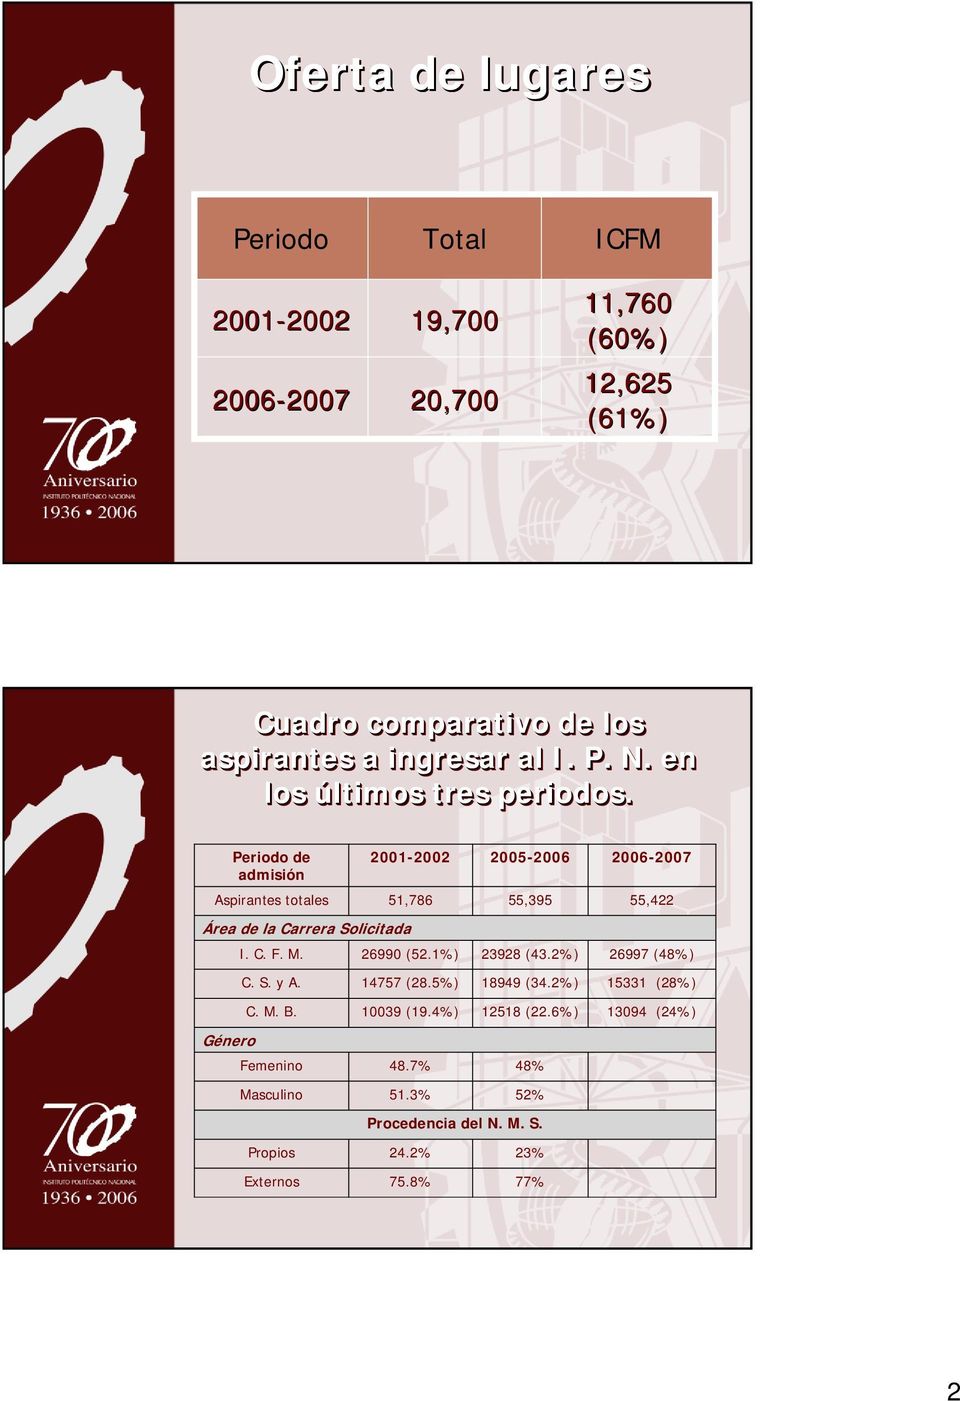 Femenino Masculino Propios Externos 2001-2002 51,86 Área de la Carrera Solicitada 26990 (52.1%) 145 (28.5%) 10039 (19.4%) 48.% 51.